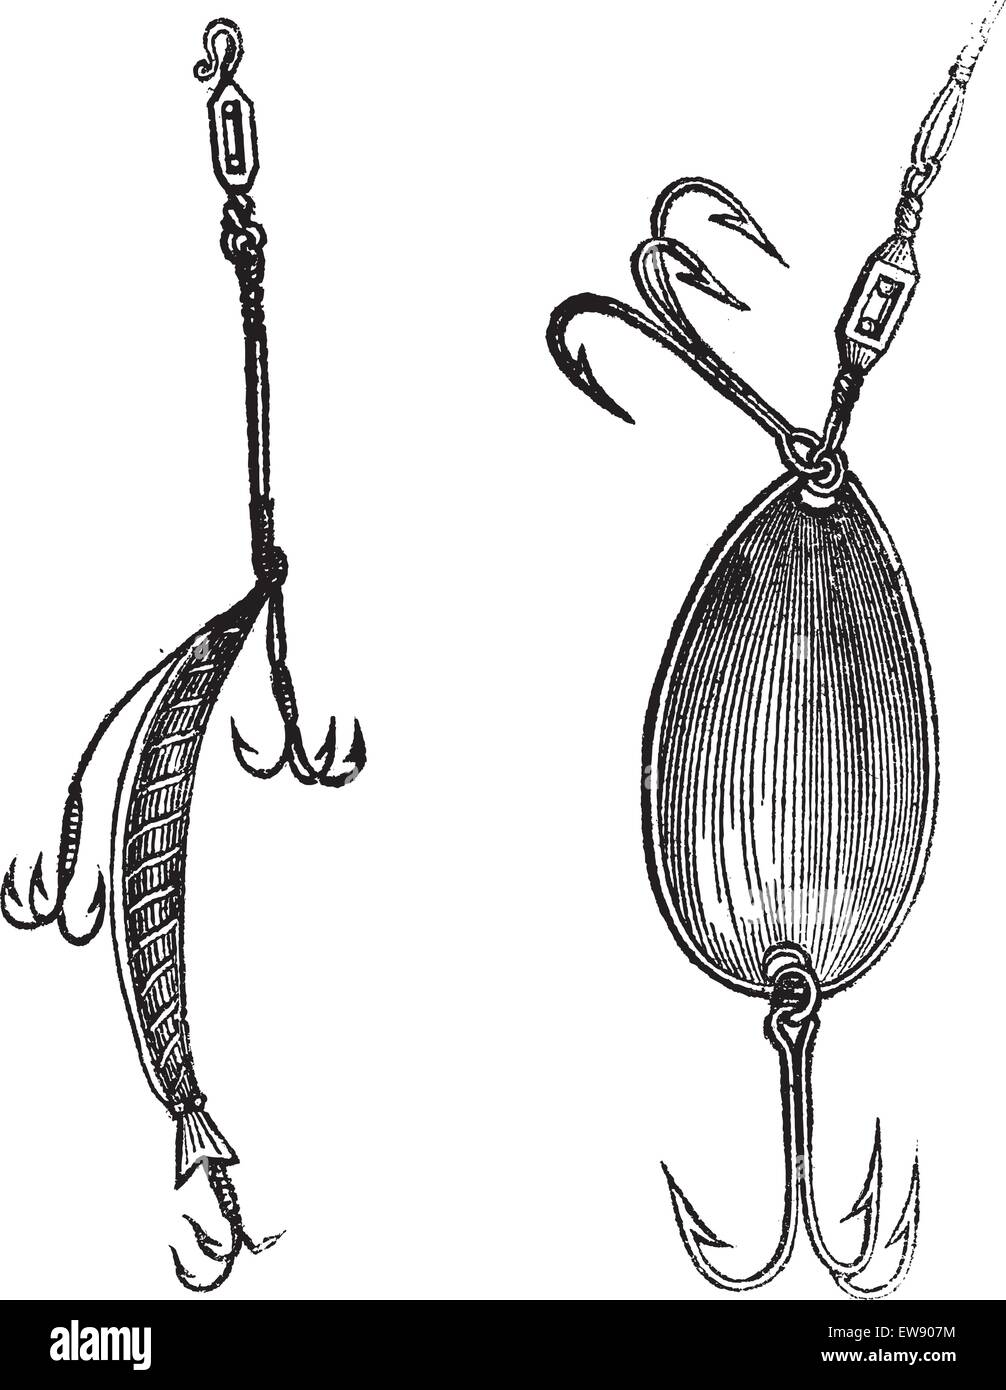 Esche Artificiali, Fig. 86. Tappo, Fig. 87. Cucchiaio, vintage illustrazioni incise. Magasin pittoresco 1874. Illustrazione Vettoriale